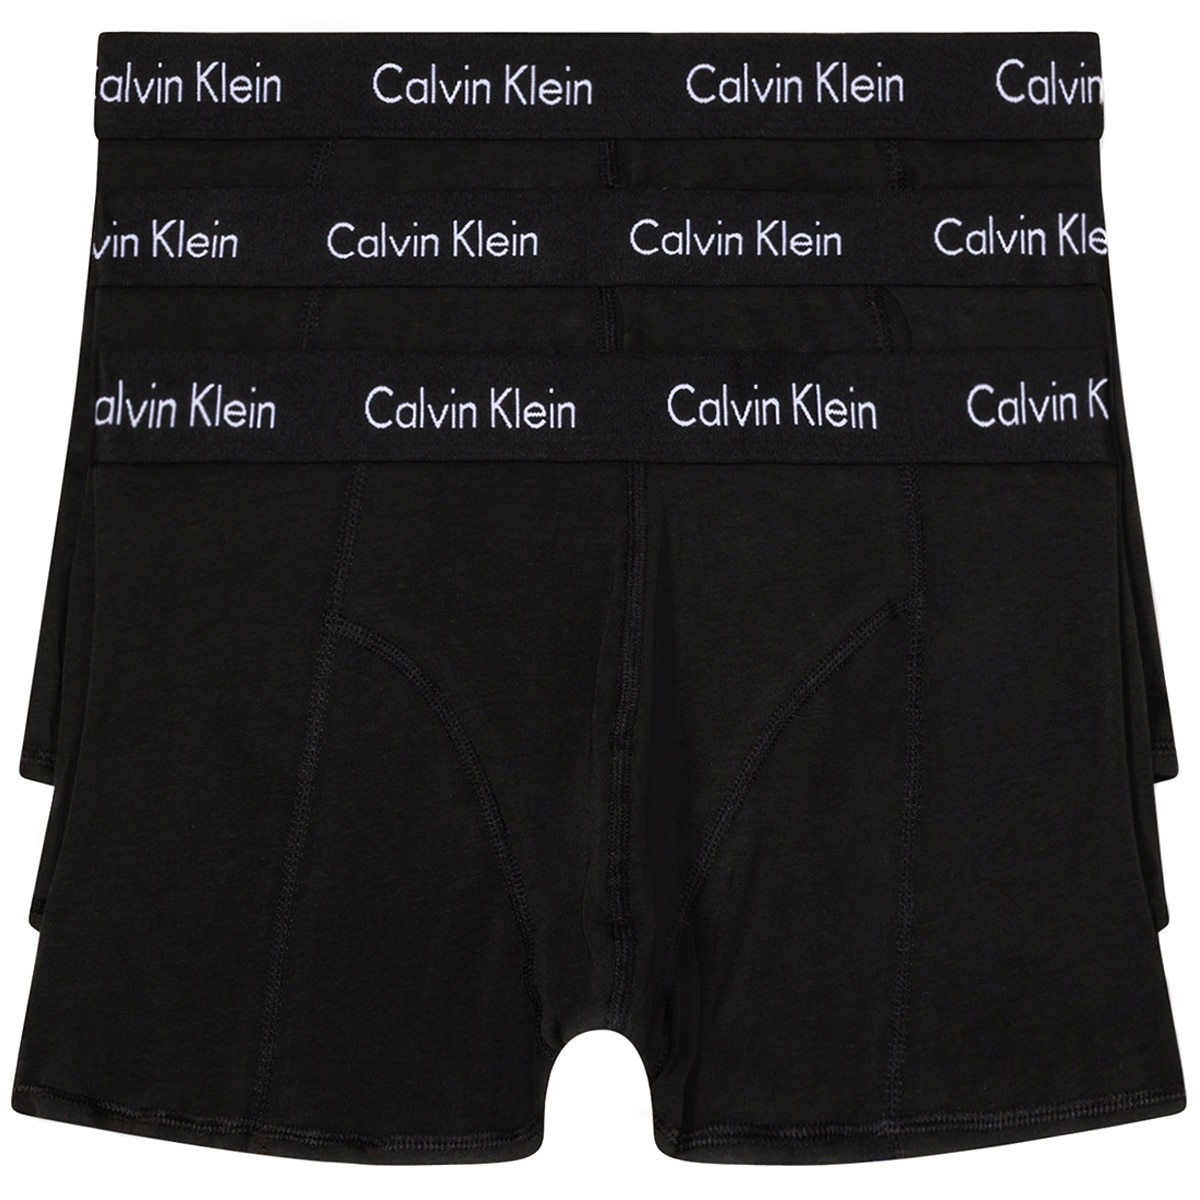 Calvin Klein Men's Trunks 3pk Large